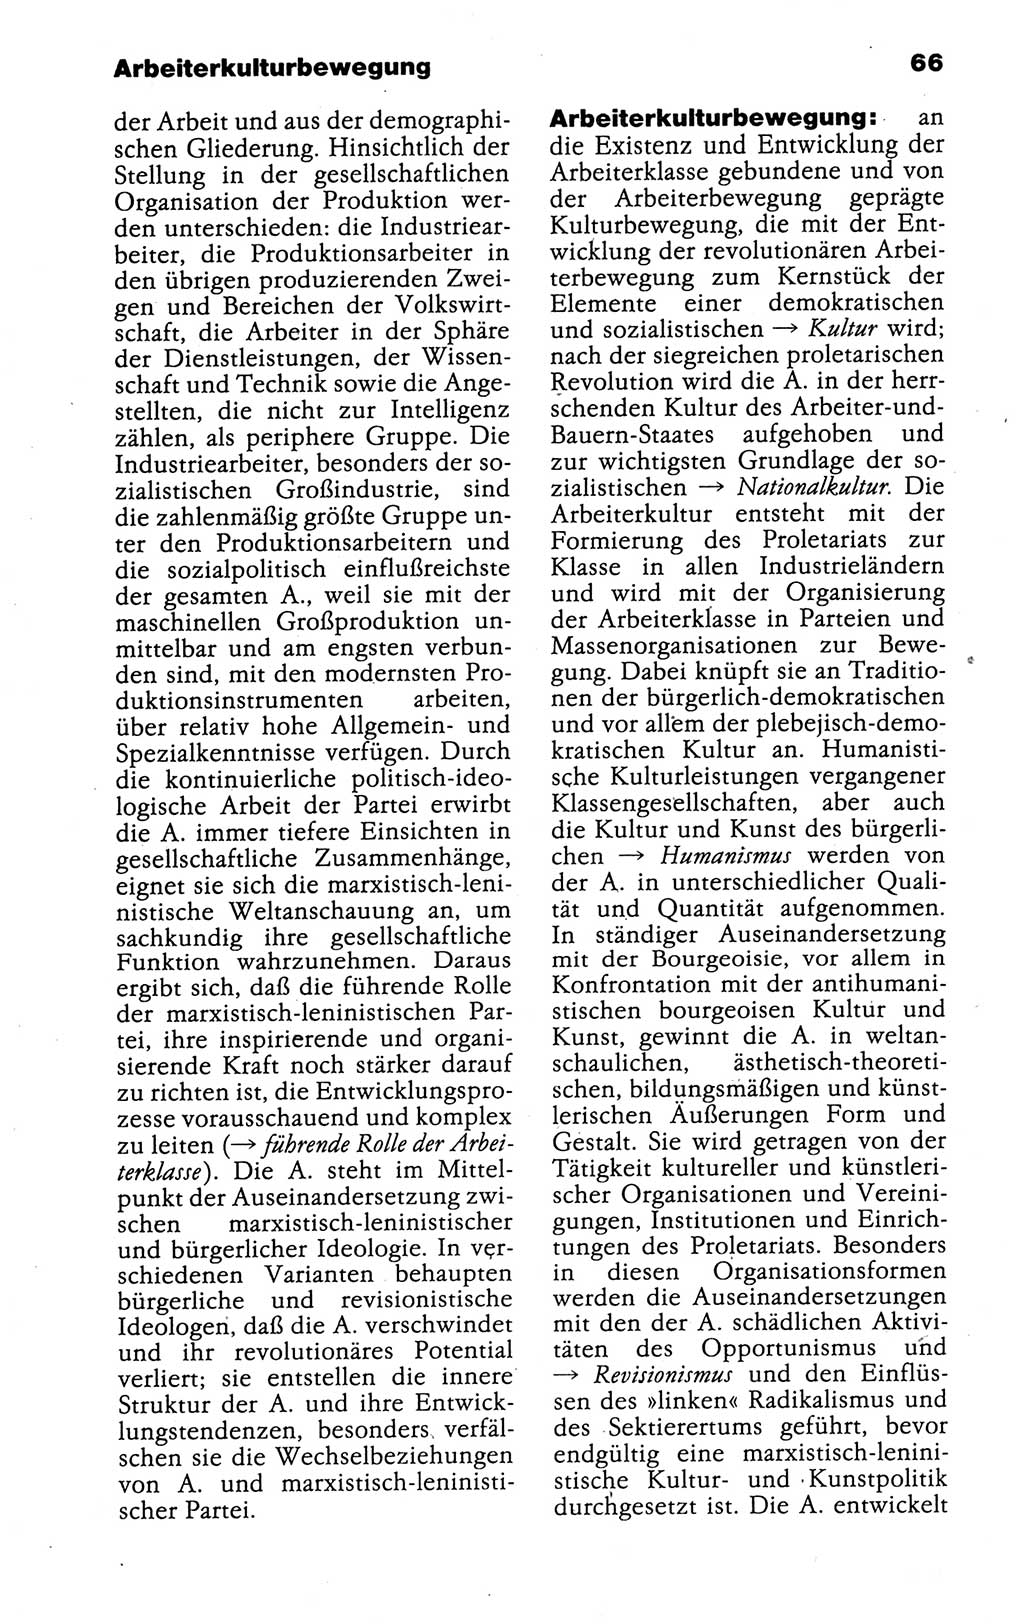 Kleines politisches Wörterbuch [Deutsche Demokratische Republik (DDR)] 1988, Seite 66 (Kl. pol. Wb. DDR 1988, S. 66)